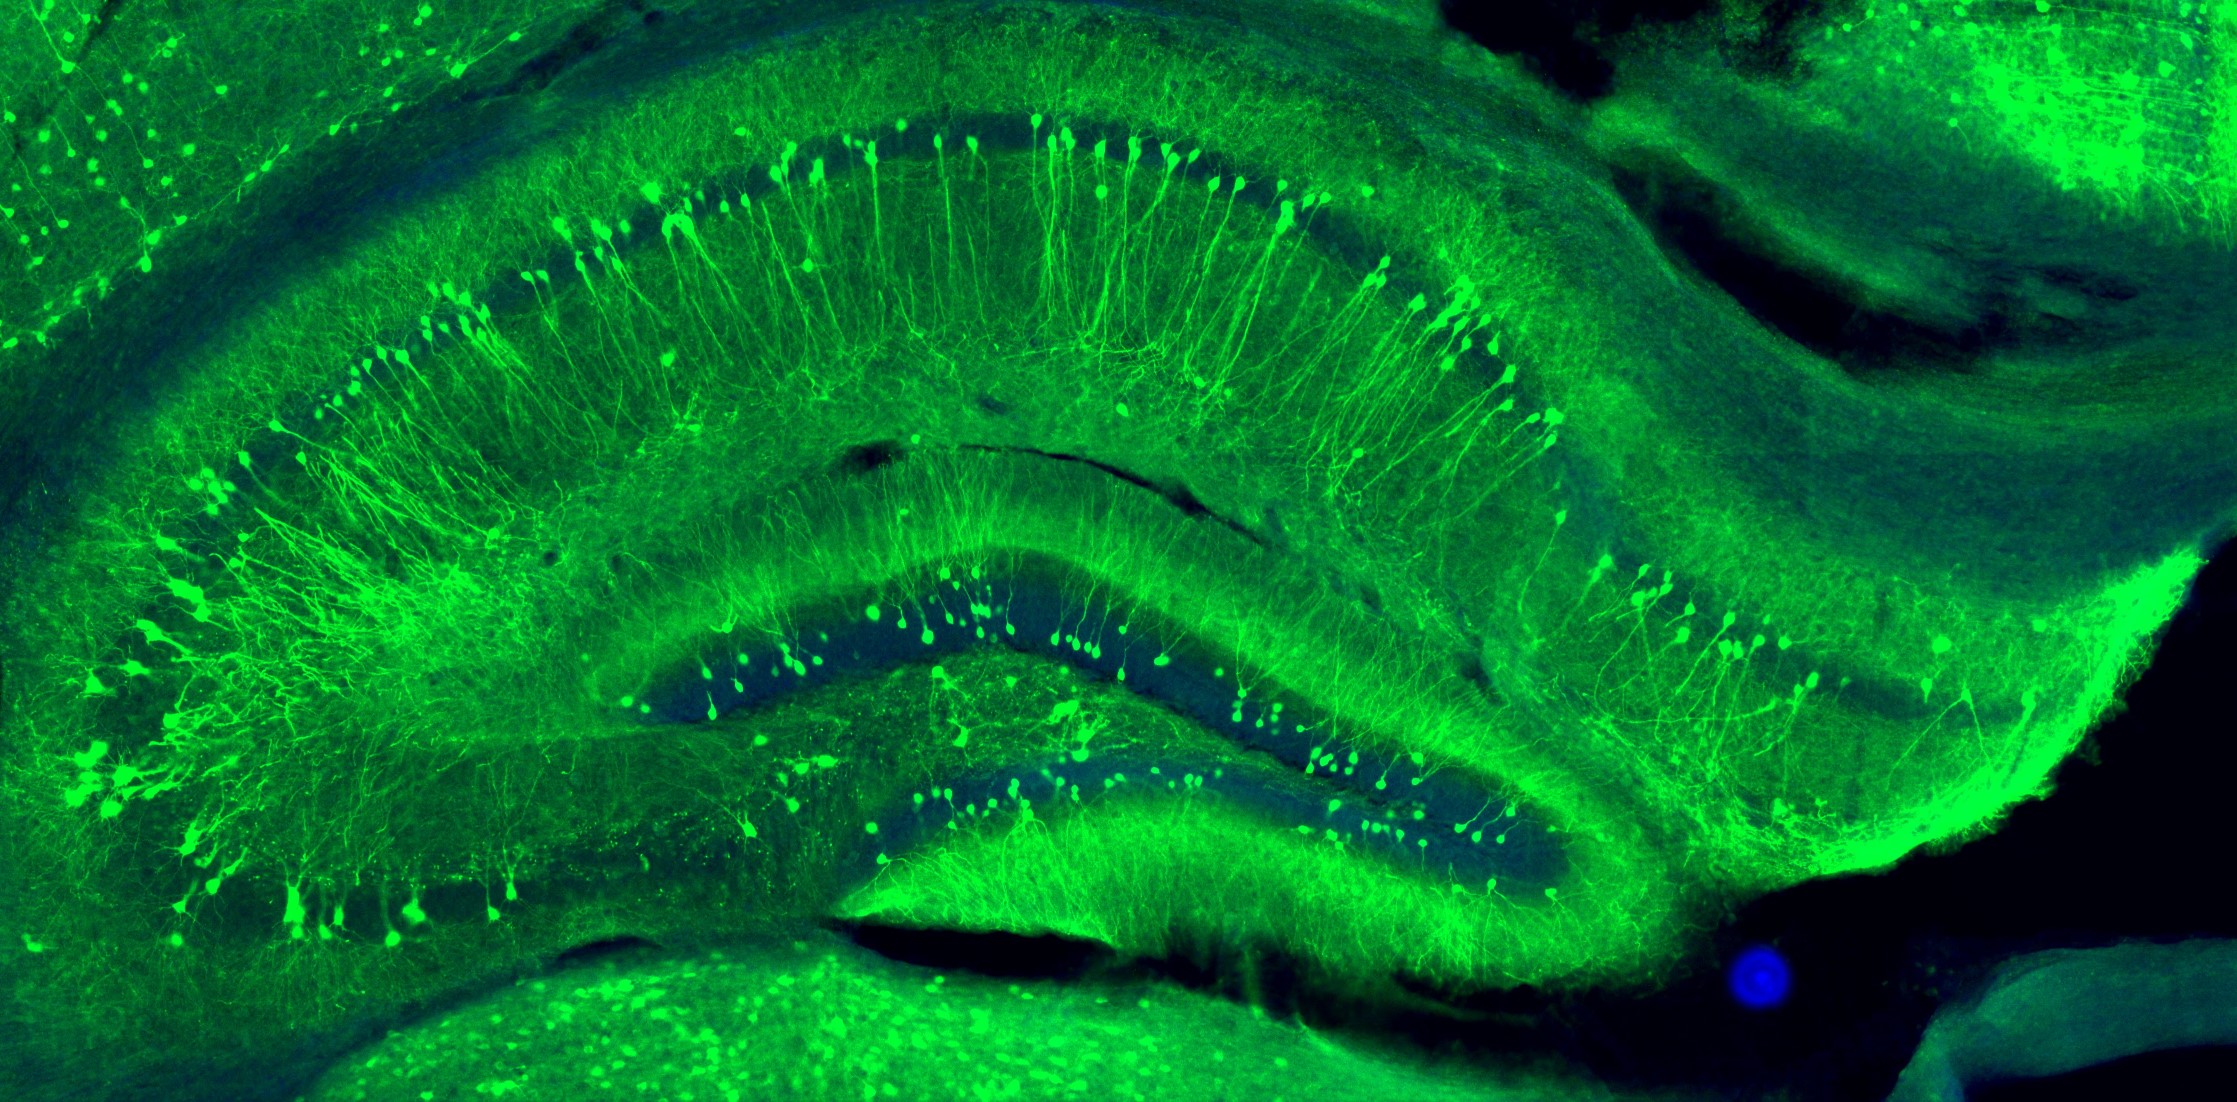 脳神経細胞に遺伝子を入れることで、細胞が緑色に光るように細工してあります。この写真に写っているのは、記憶に大事な海馬と呼ばれる脳領域です。